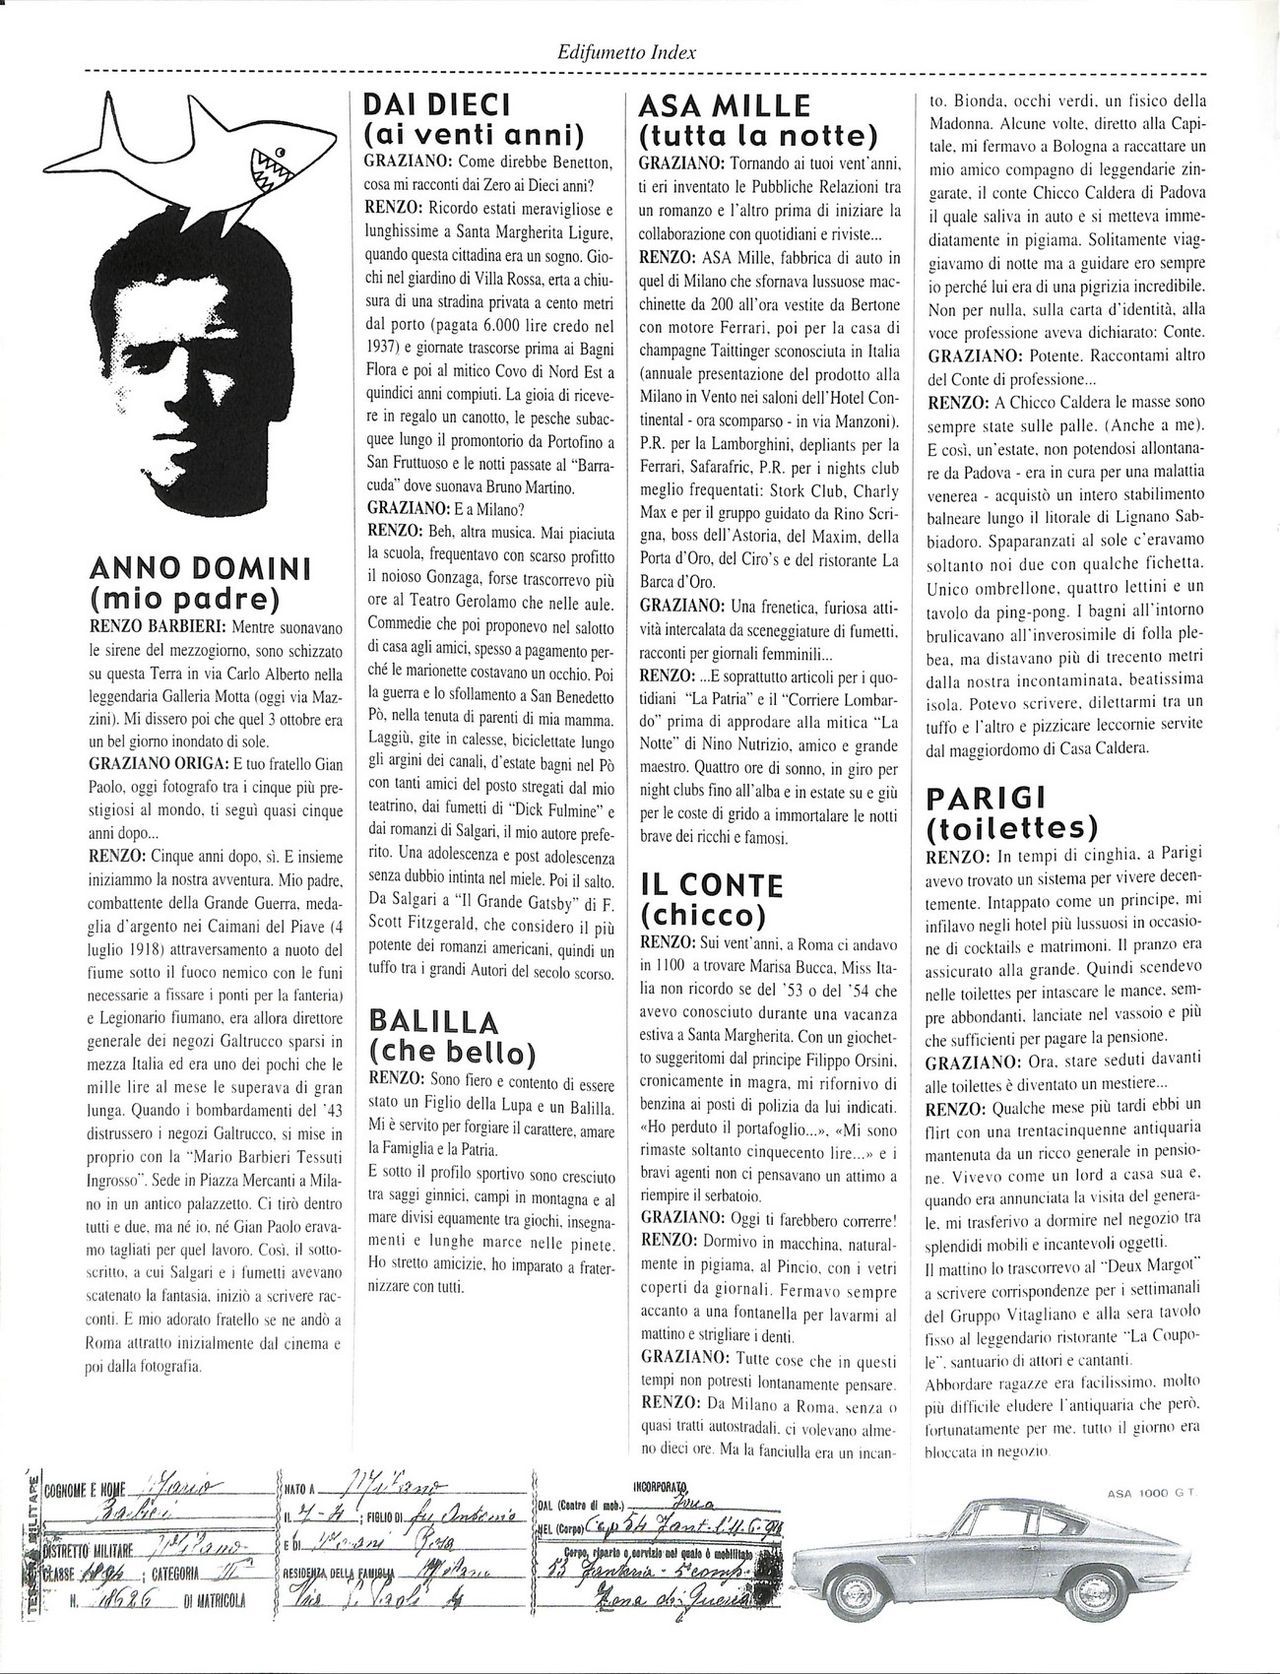 EdiFumetto index (Graziano Origa, 2002) [Italian] 7